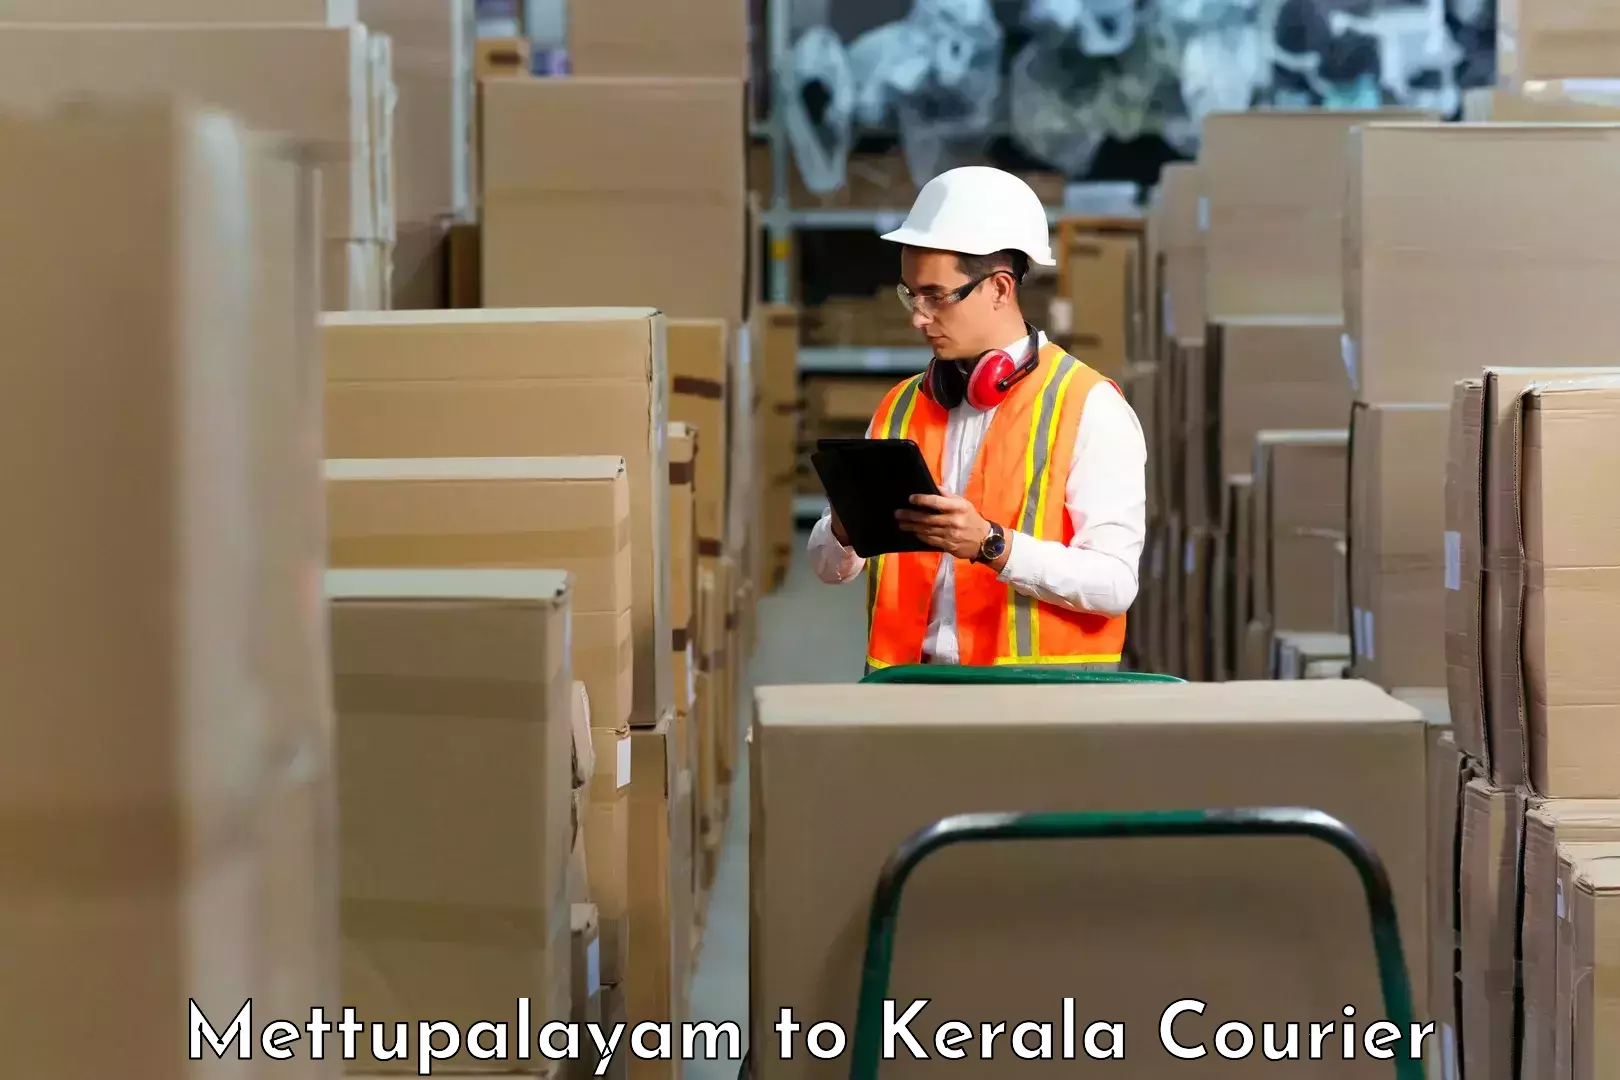 Discount courier rates Mettupalayam to Kakkayam